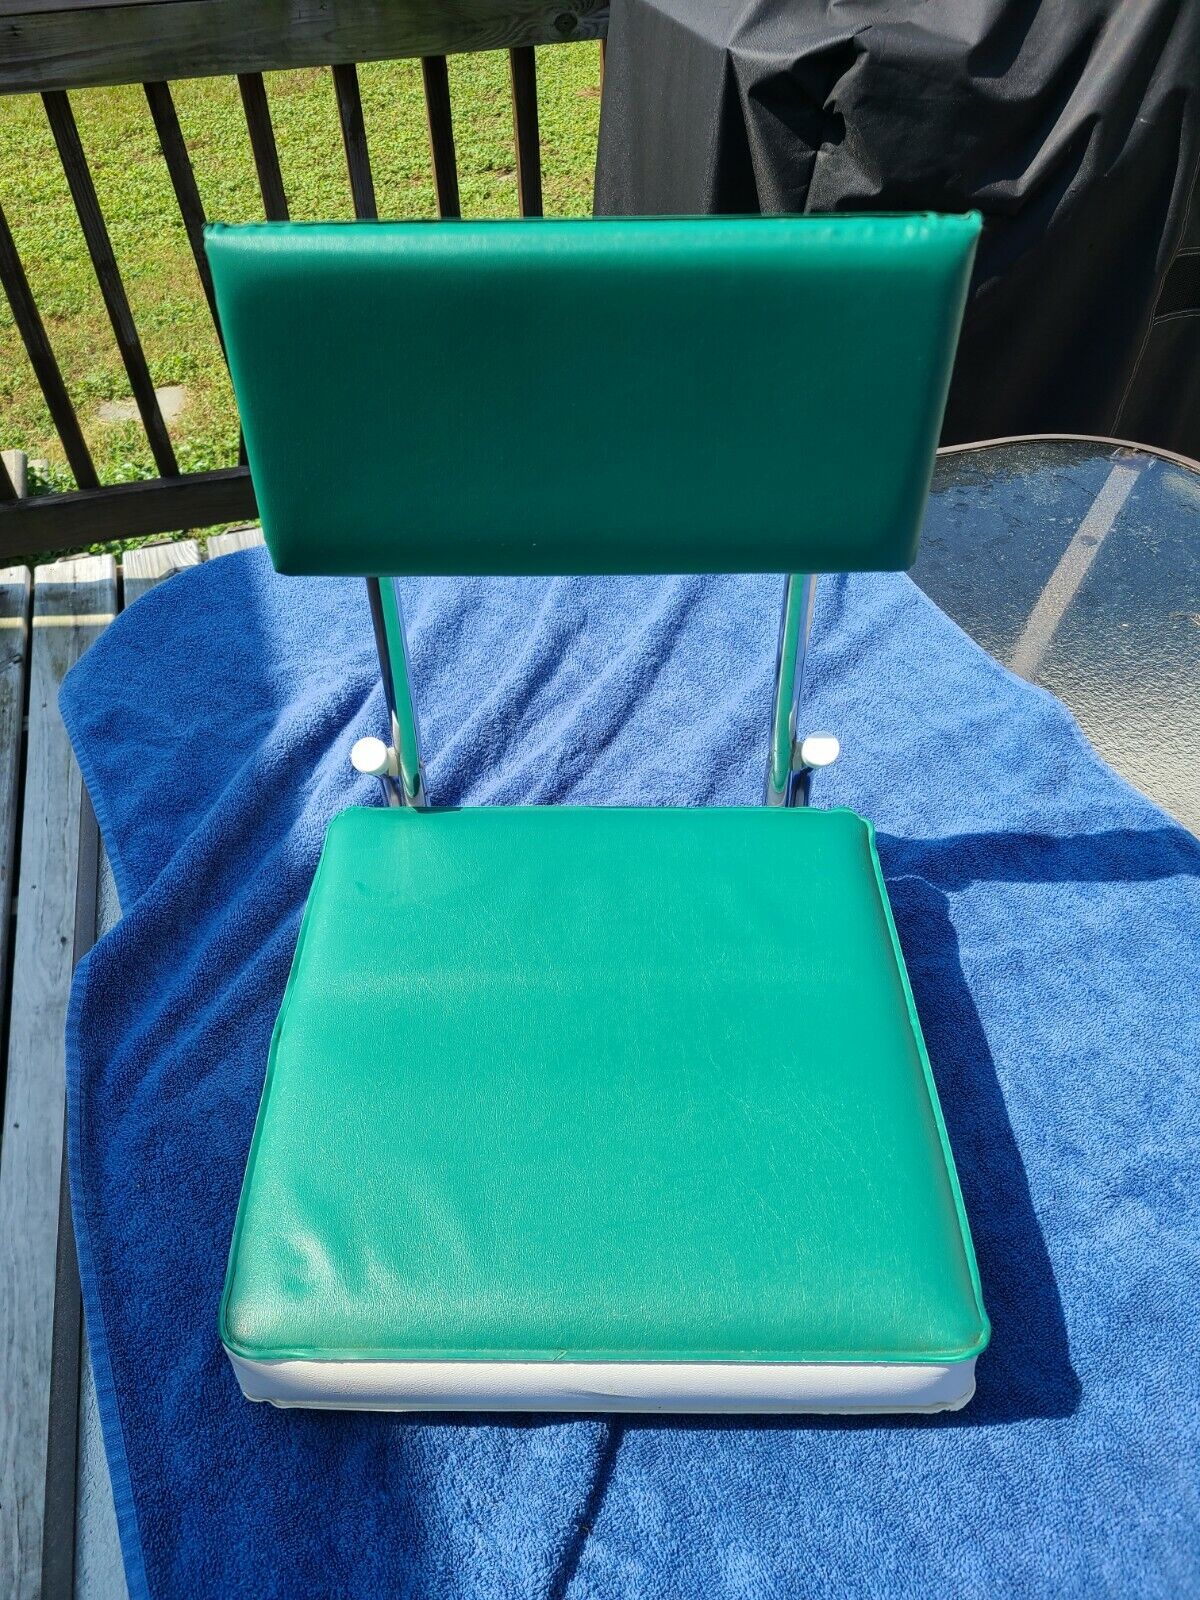 STADIUM SEAT Folding Green Cushion Spring Clamp Vintage  Metal frame